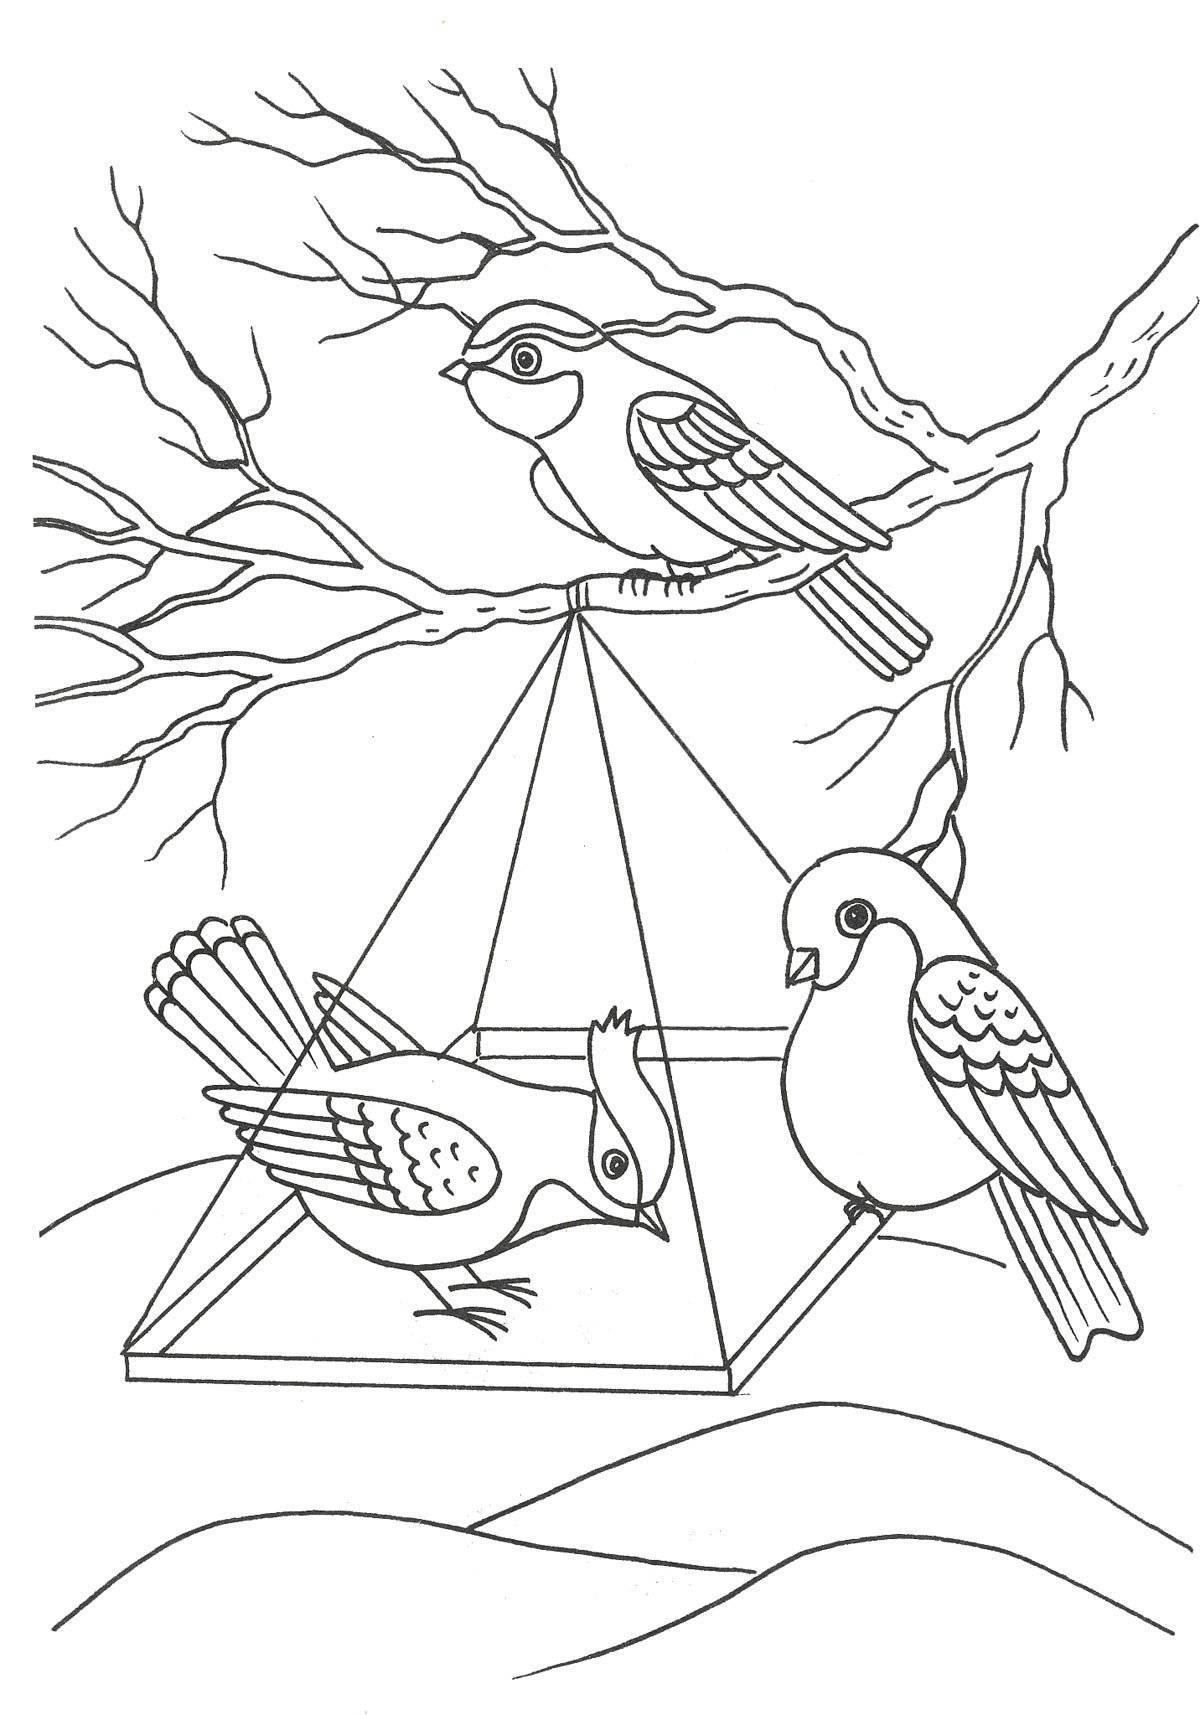 Coloring page elegant winter birds